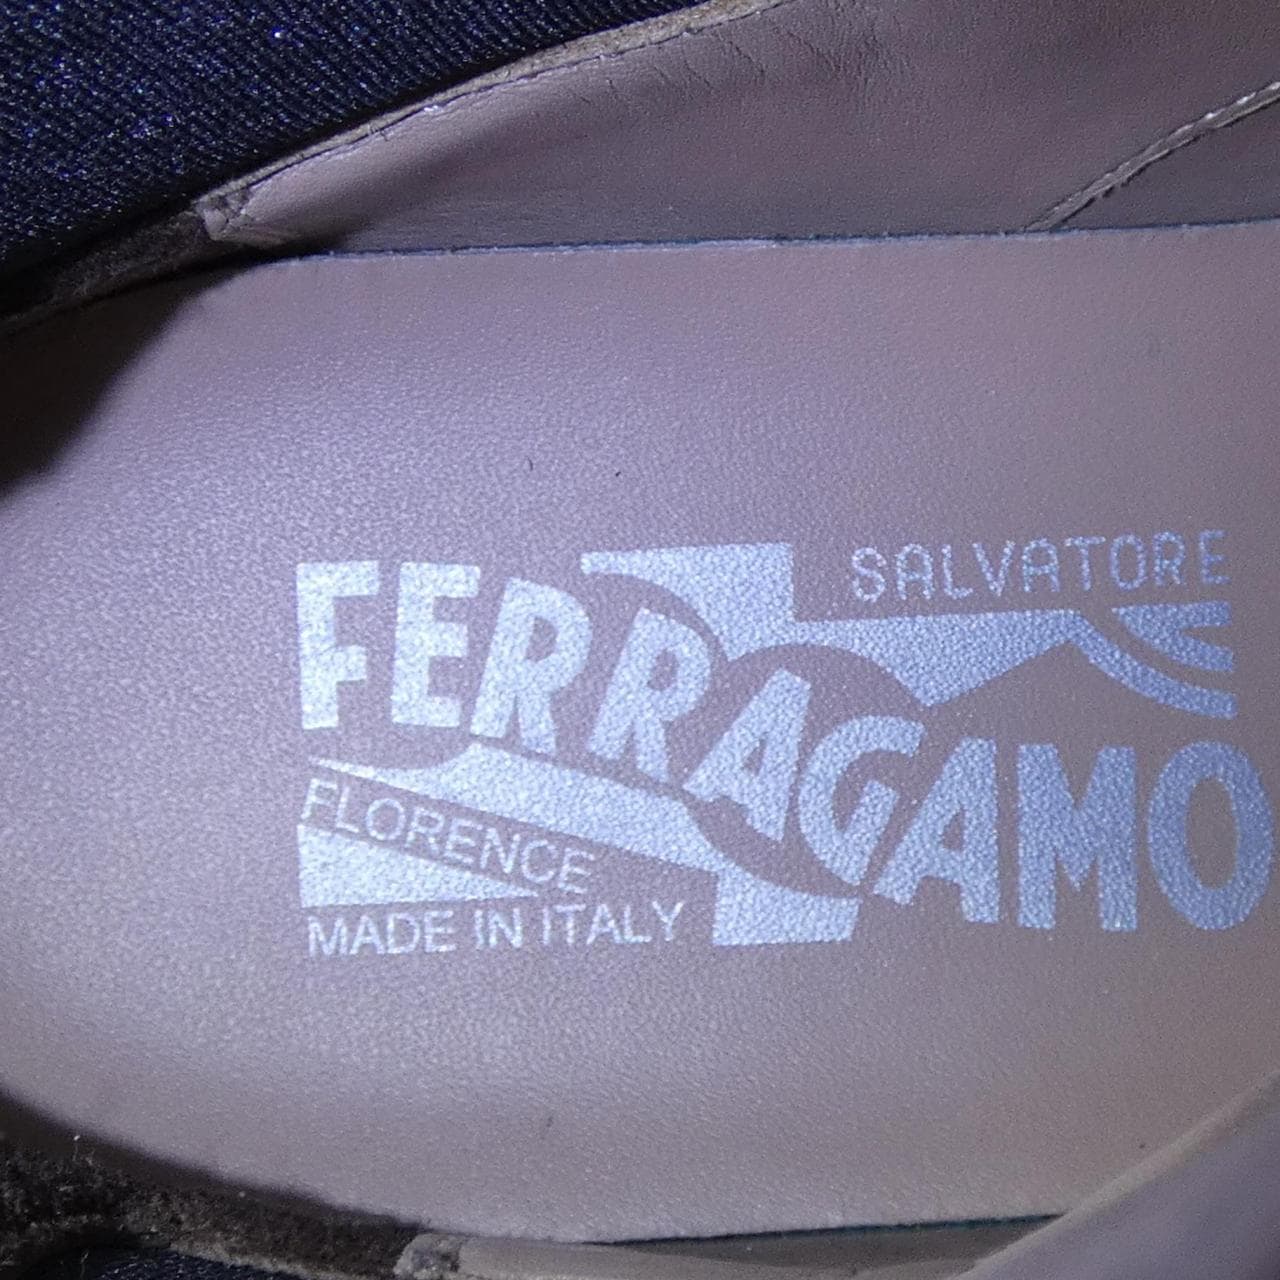 薩爾瓦托雷·菲拉格慕SALVATORE FERRAGAMO薩爾瓦托雷·菲拉格慕 (Salvatore Ferragamo) 靴子